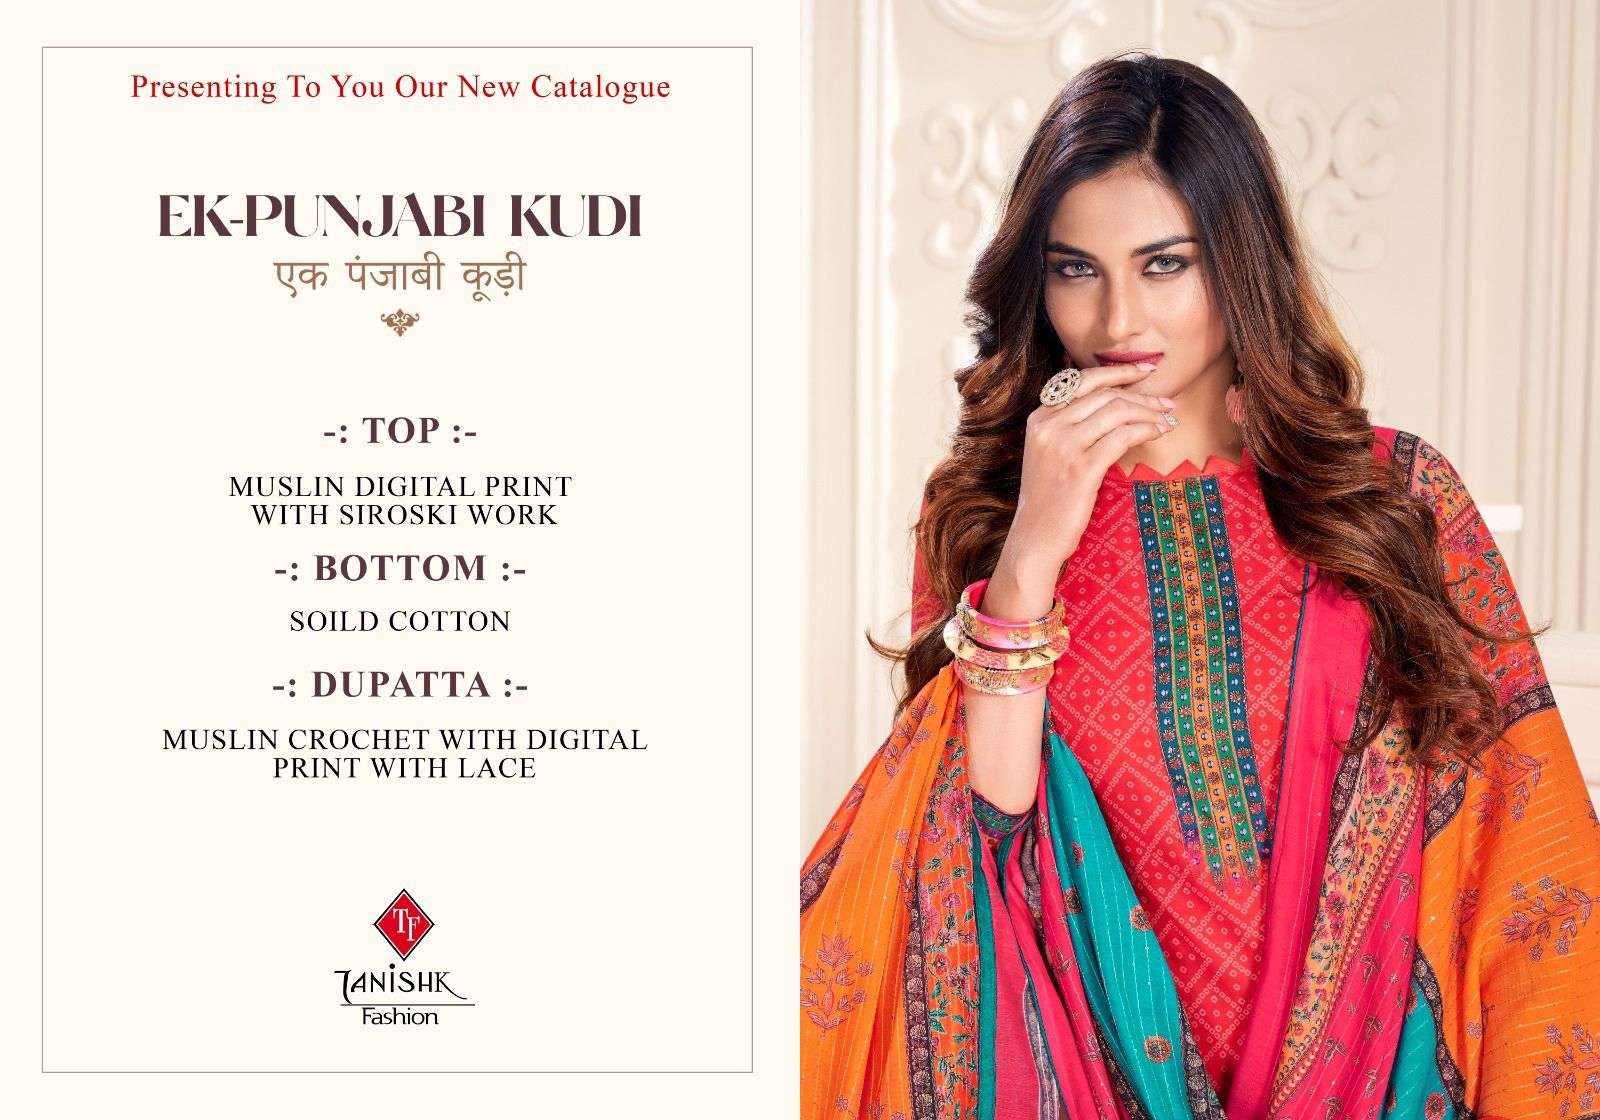 tanishk fashion ek punjabi kudi 4601-4601 series indian designer salwar kameez catalogue online market surat